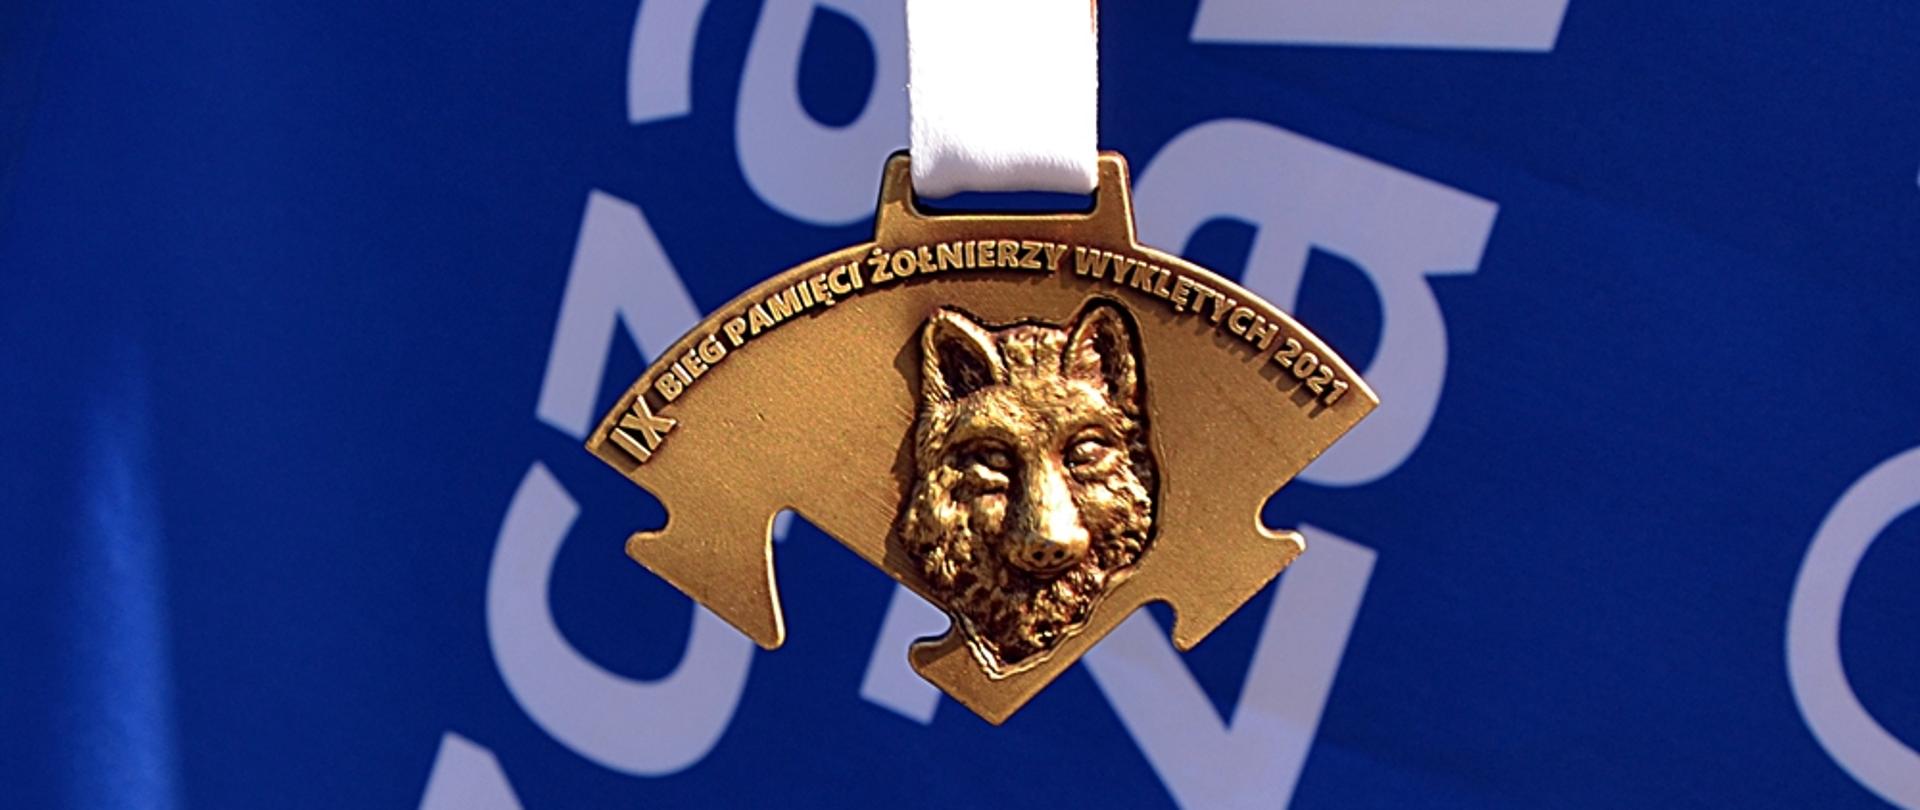 Na zdjęciu widać złoty medal z twarzą wilka i napisem IX bieg pamięci żołnierzy wyklętych 2021 na niebieskim tle z białymi napisami. 